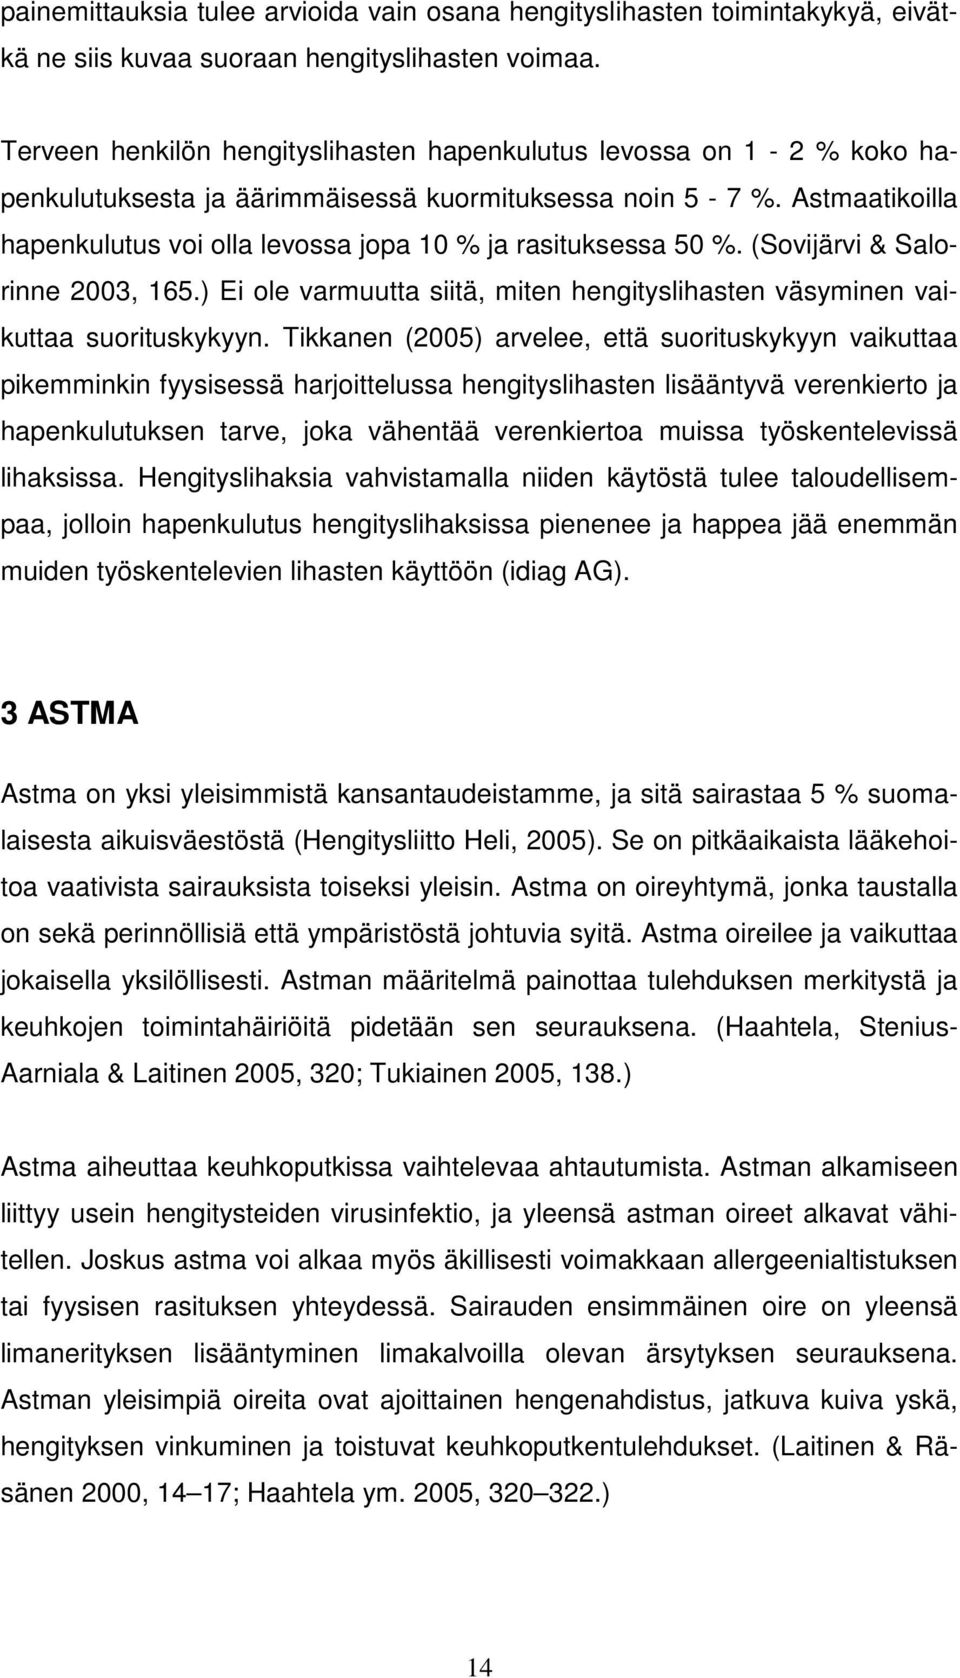 Astmaatikoilla hapenkulutus voi olla levossa jopa 10 % ja rasituksessa 50 %. (Sovijärvi & Salorinne 2003, 165.) Ei ole varmuutta siitä, miten hengityslihasten väsyminen vaikuttaa suorituskykyyn.